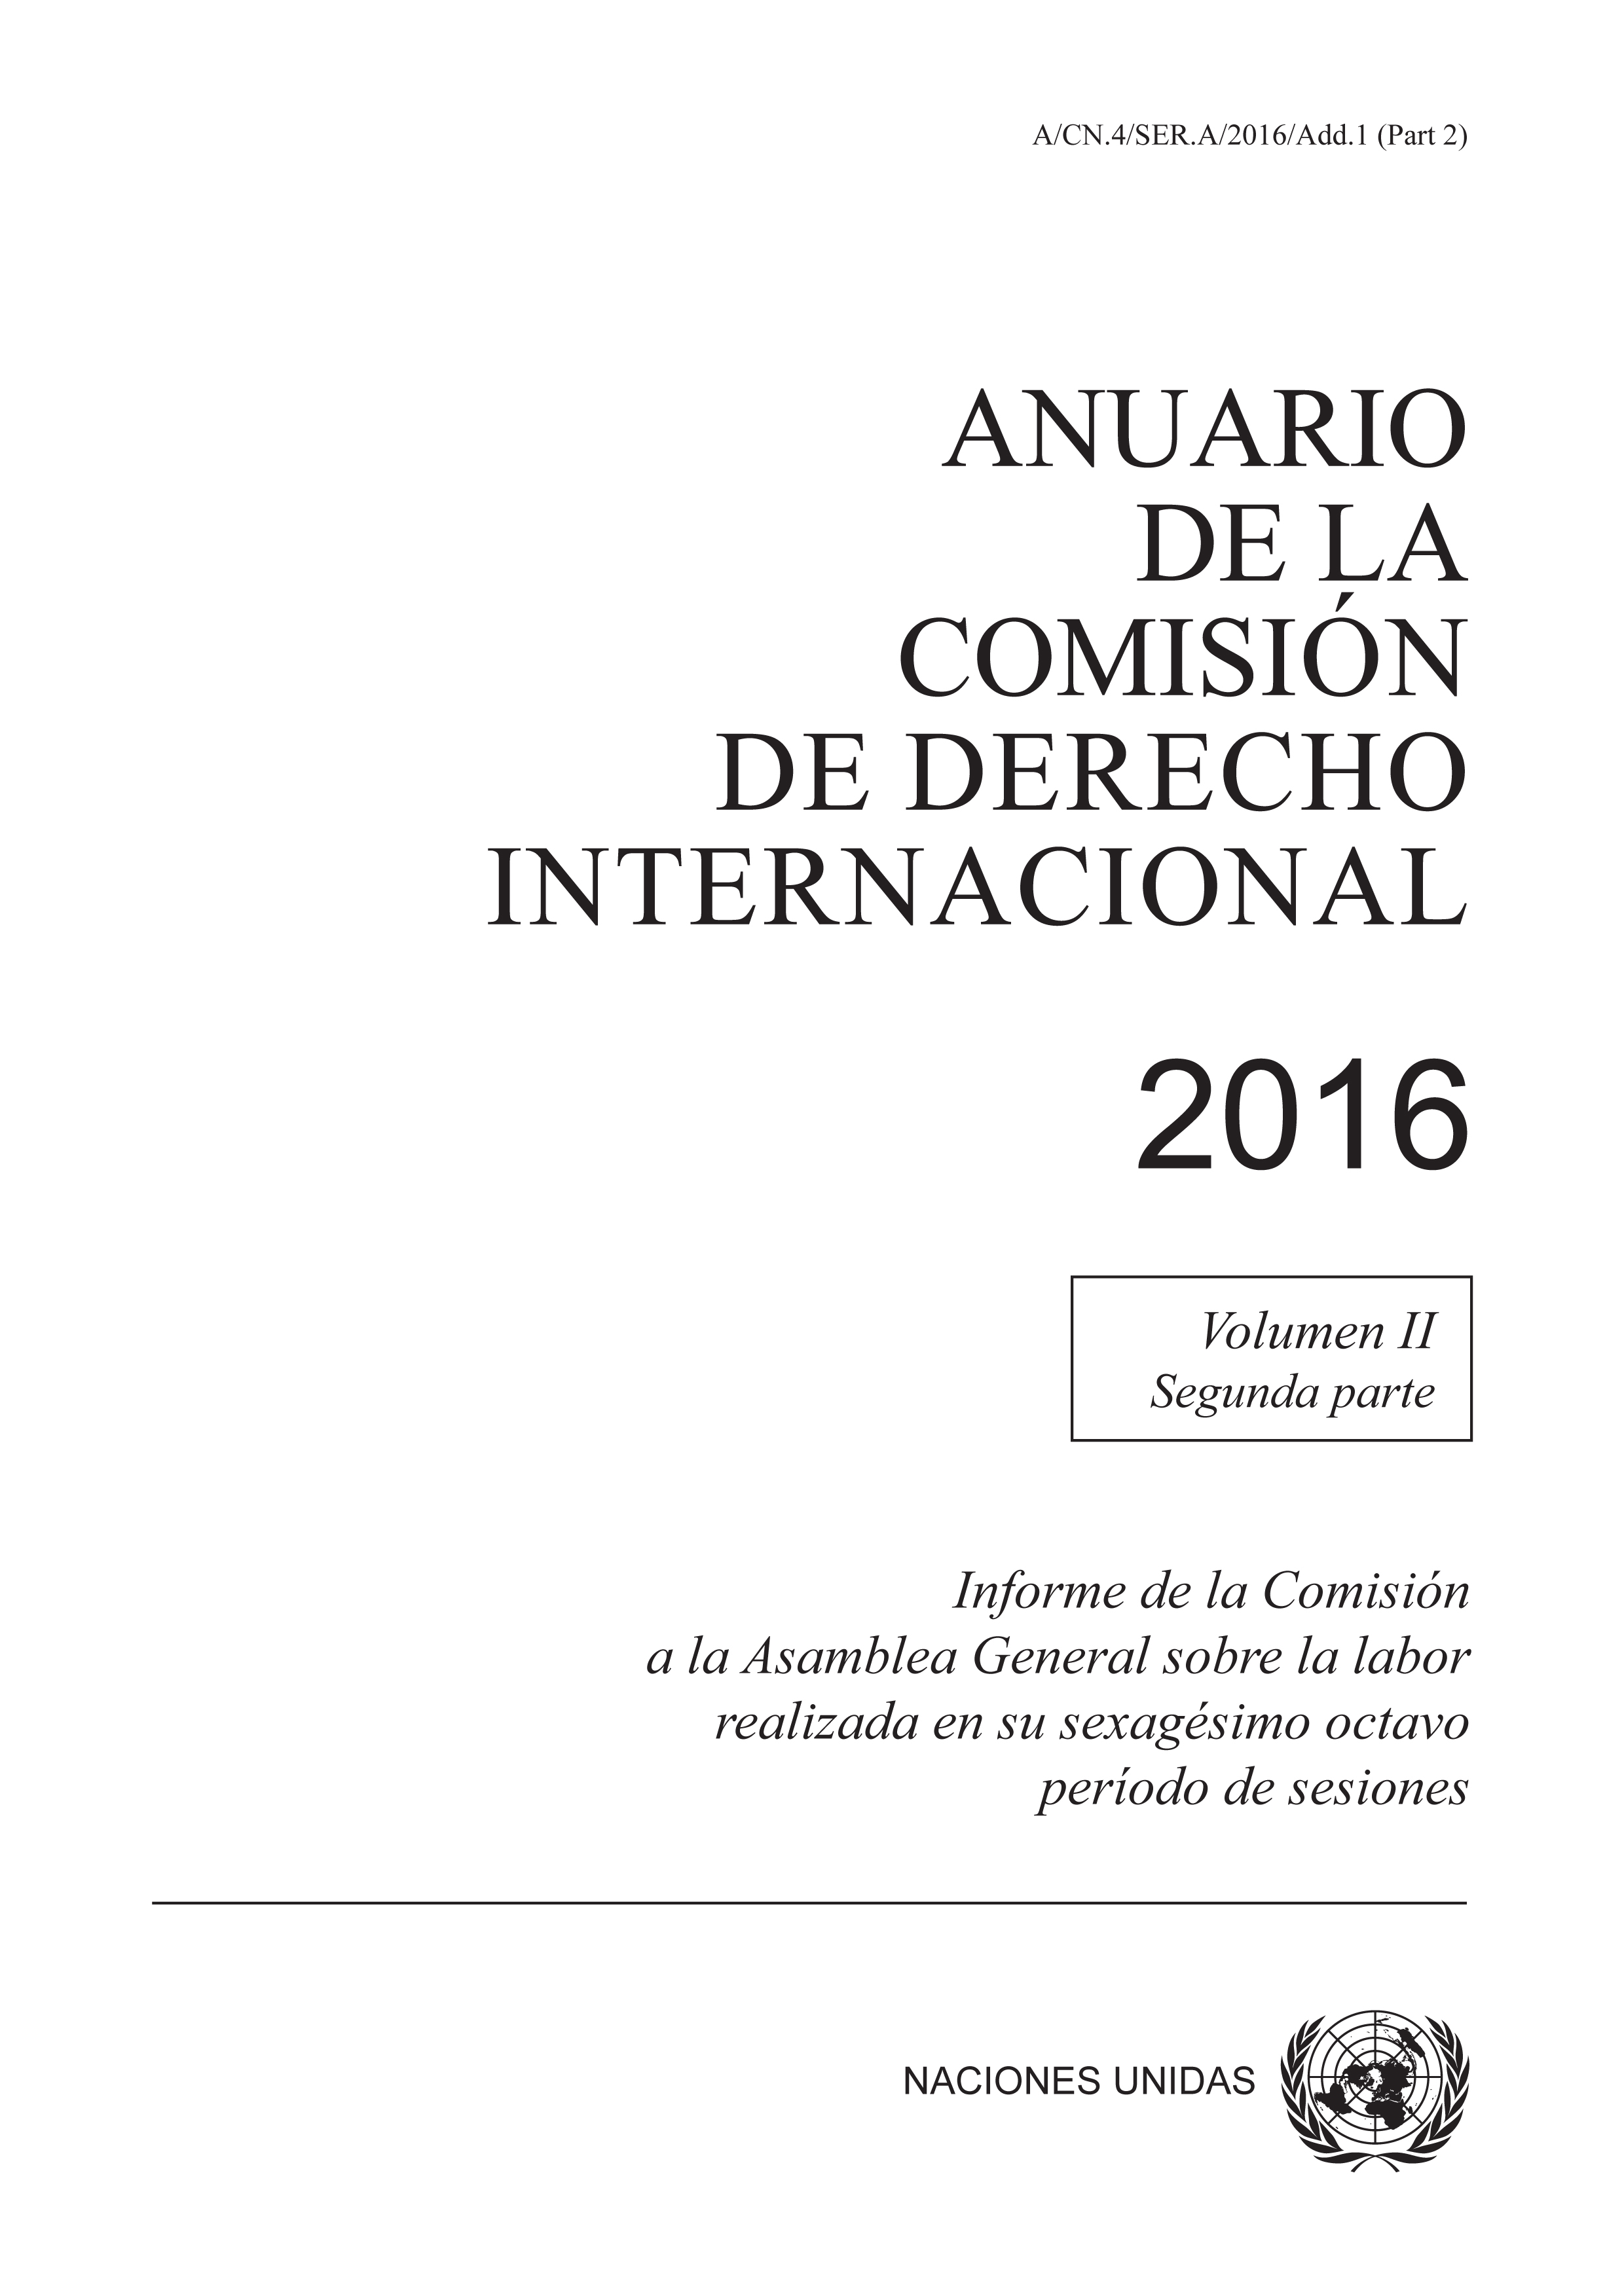 image of Anuario de la Comisión de Derecho Internacional 2016, Vol. II, Parte 2